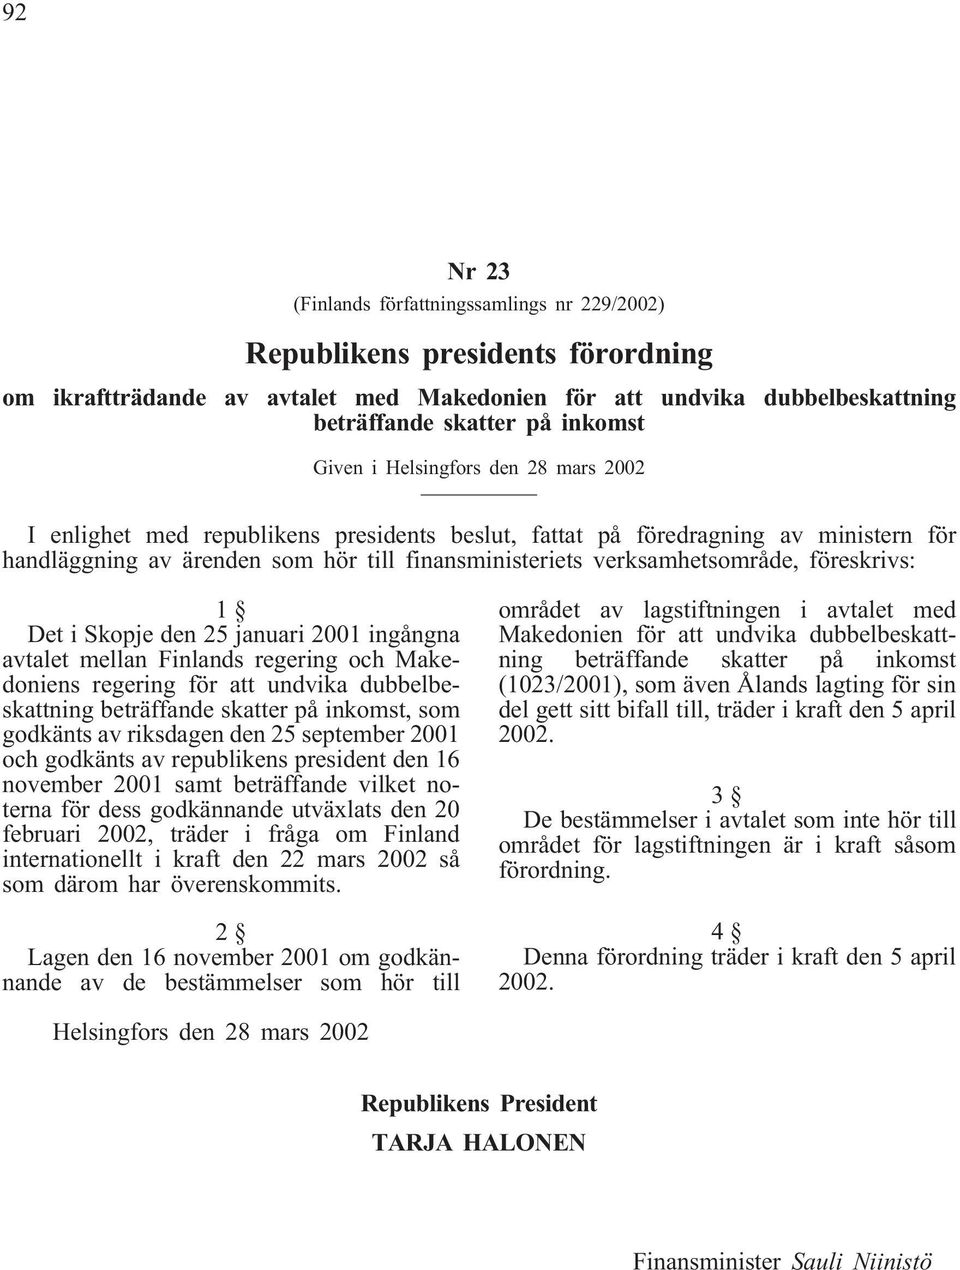 föreskrivs: 1 Det i Skopje den 25 januari 2001 ingångna avtalet mellan Finlands regering och Makedoniens regering för att undvika dubbelbeskattning beträffande skatter på inkomst, som godkänts av